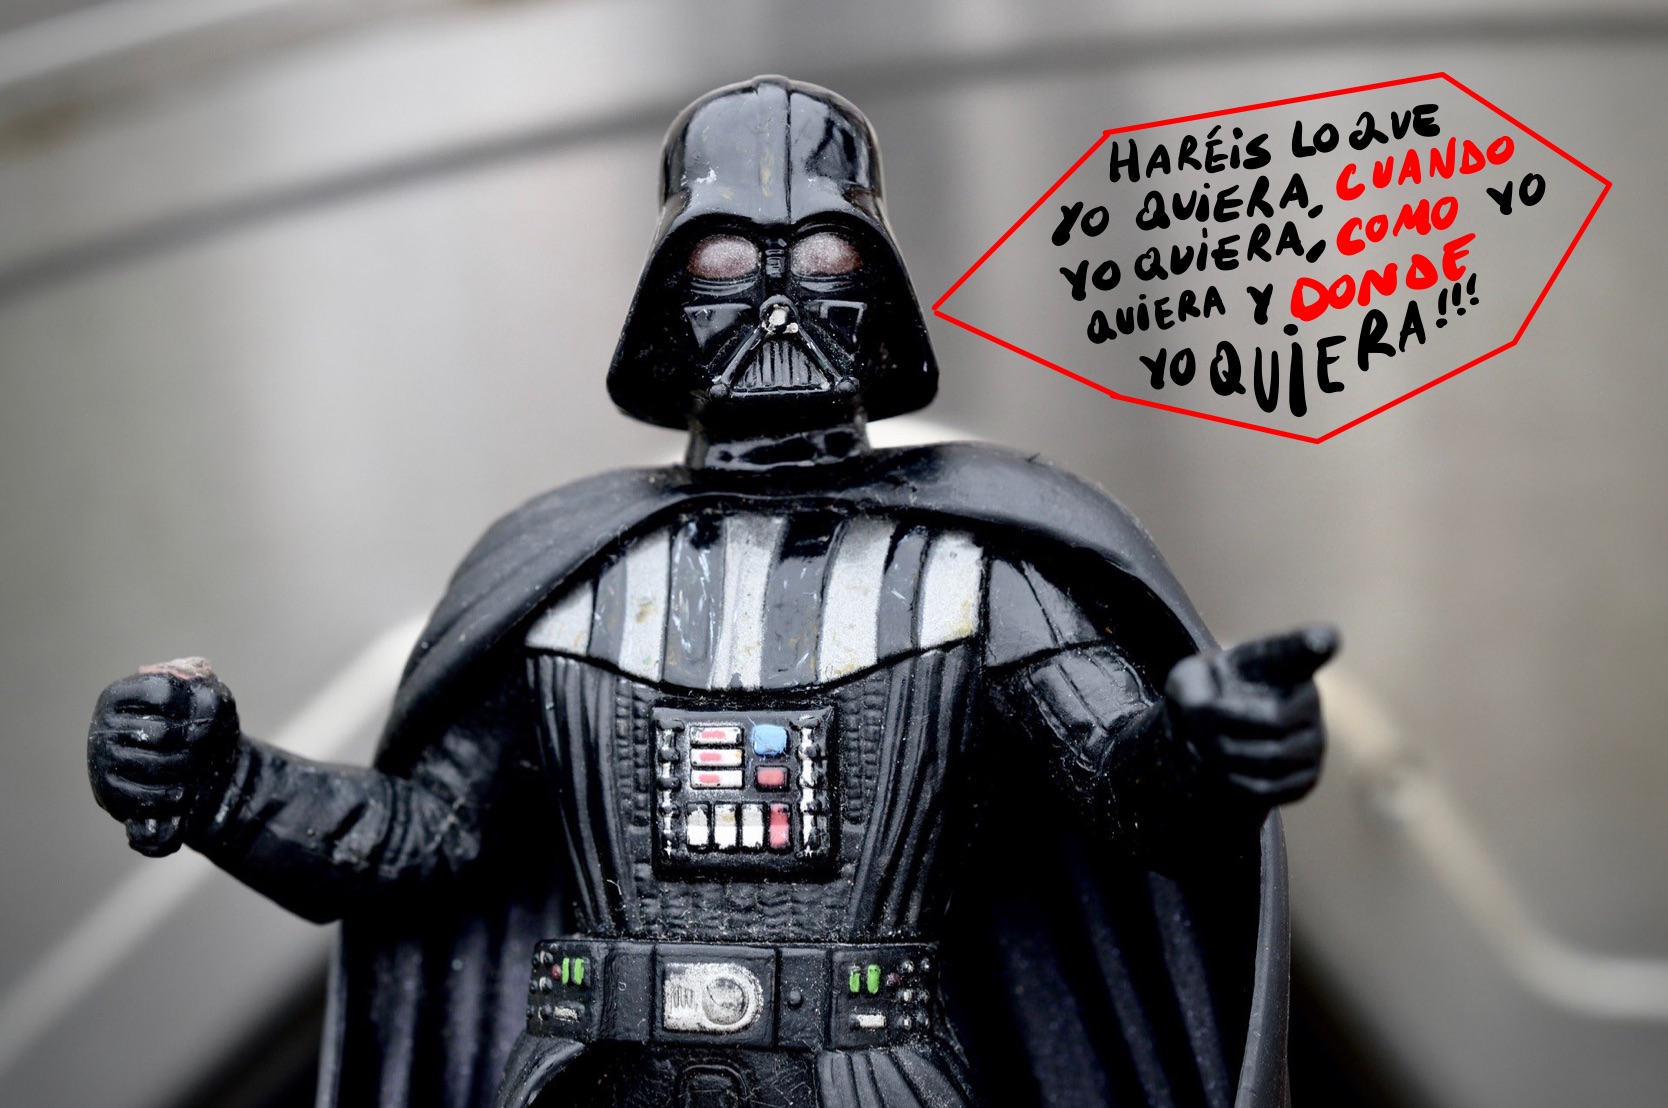 Darth Vader apunta hacia nosotros en actitud subordinante y nos amenaza con una oración compuesta llena de subordinadas: "¡Haréis lo que yo quiera, como yo quiera, cuando yo quiera y donde yo quiera!"